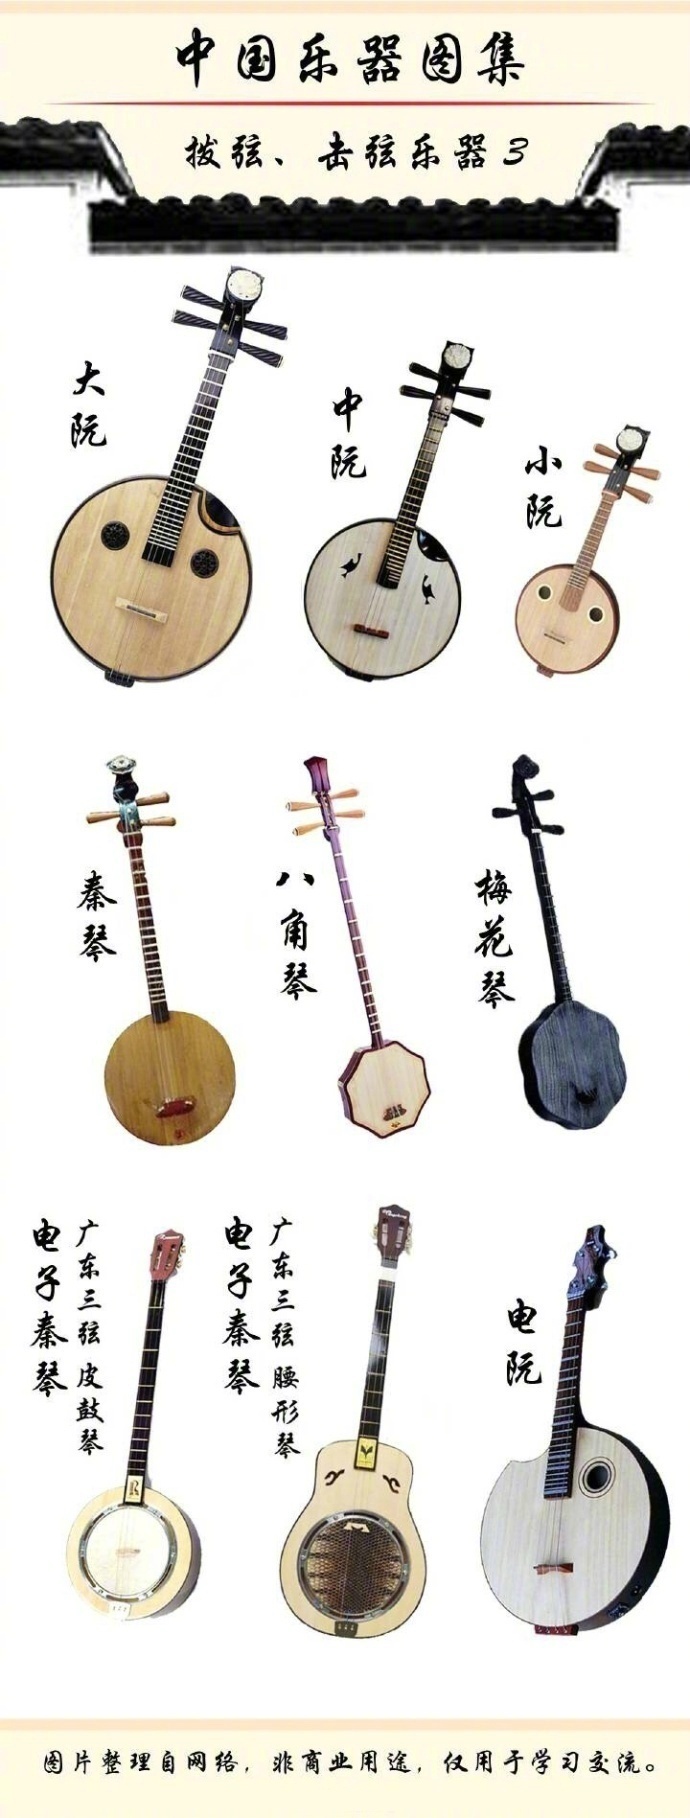 中国所有乐器大全图片图片